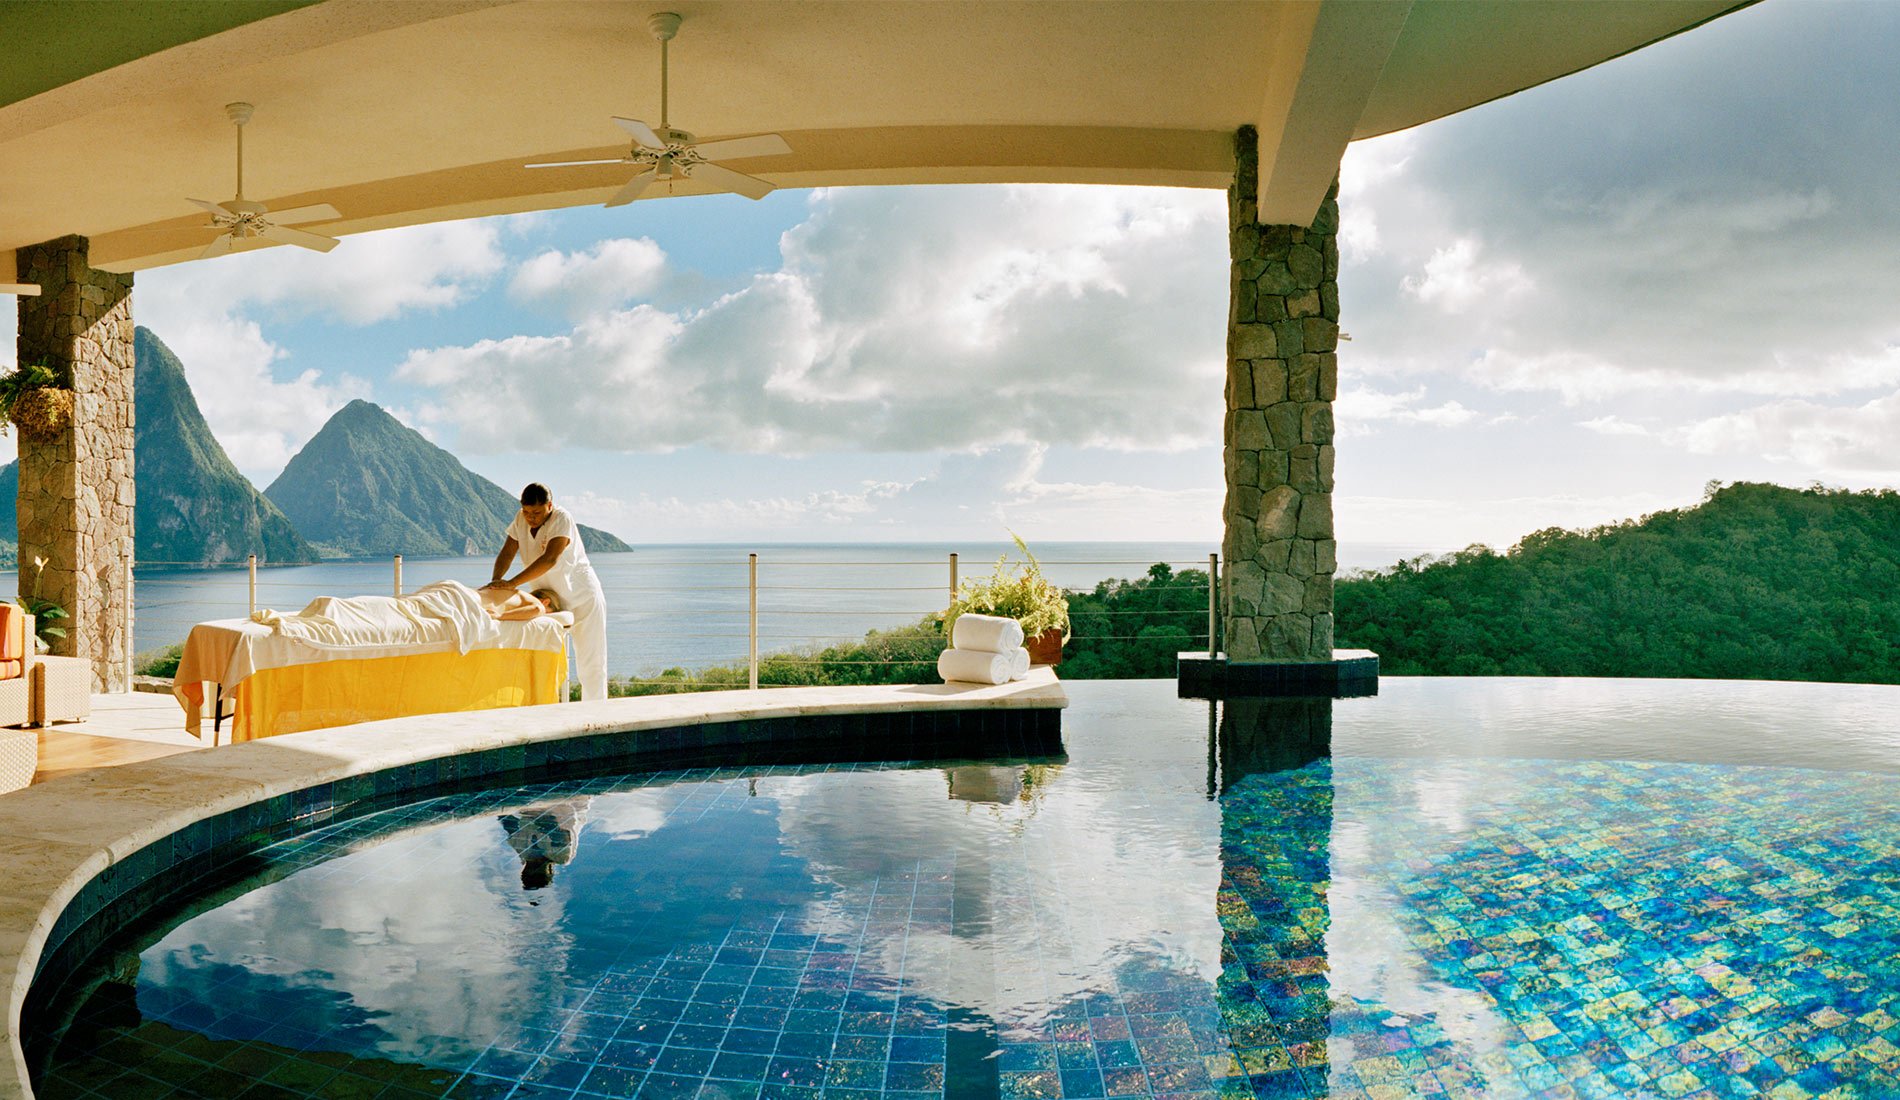 Hôtel de luxe Jade Mountain resort 5 étoiles Sainte-Lucie caraïbes piscine à débordement